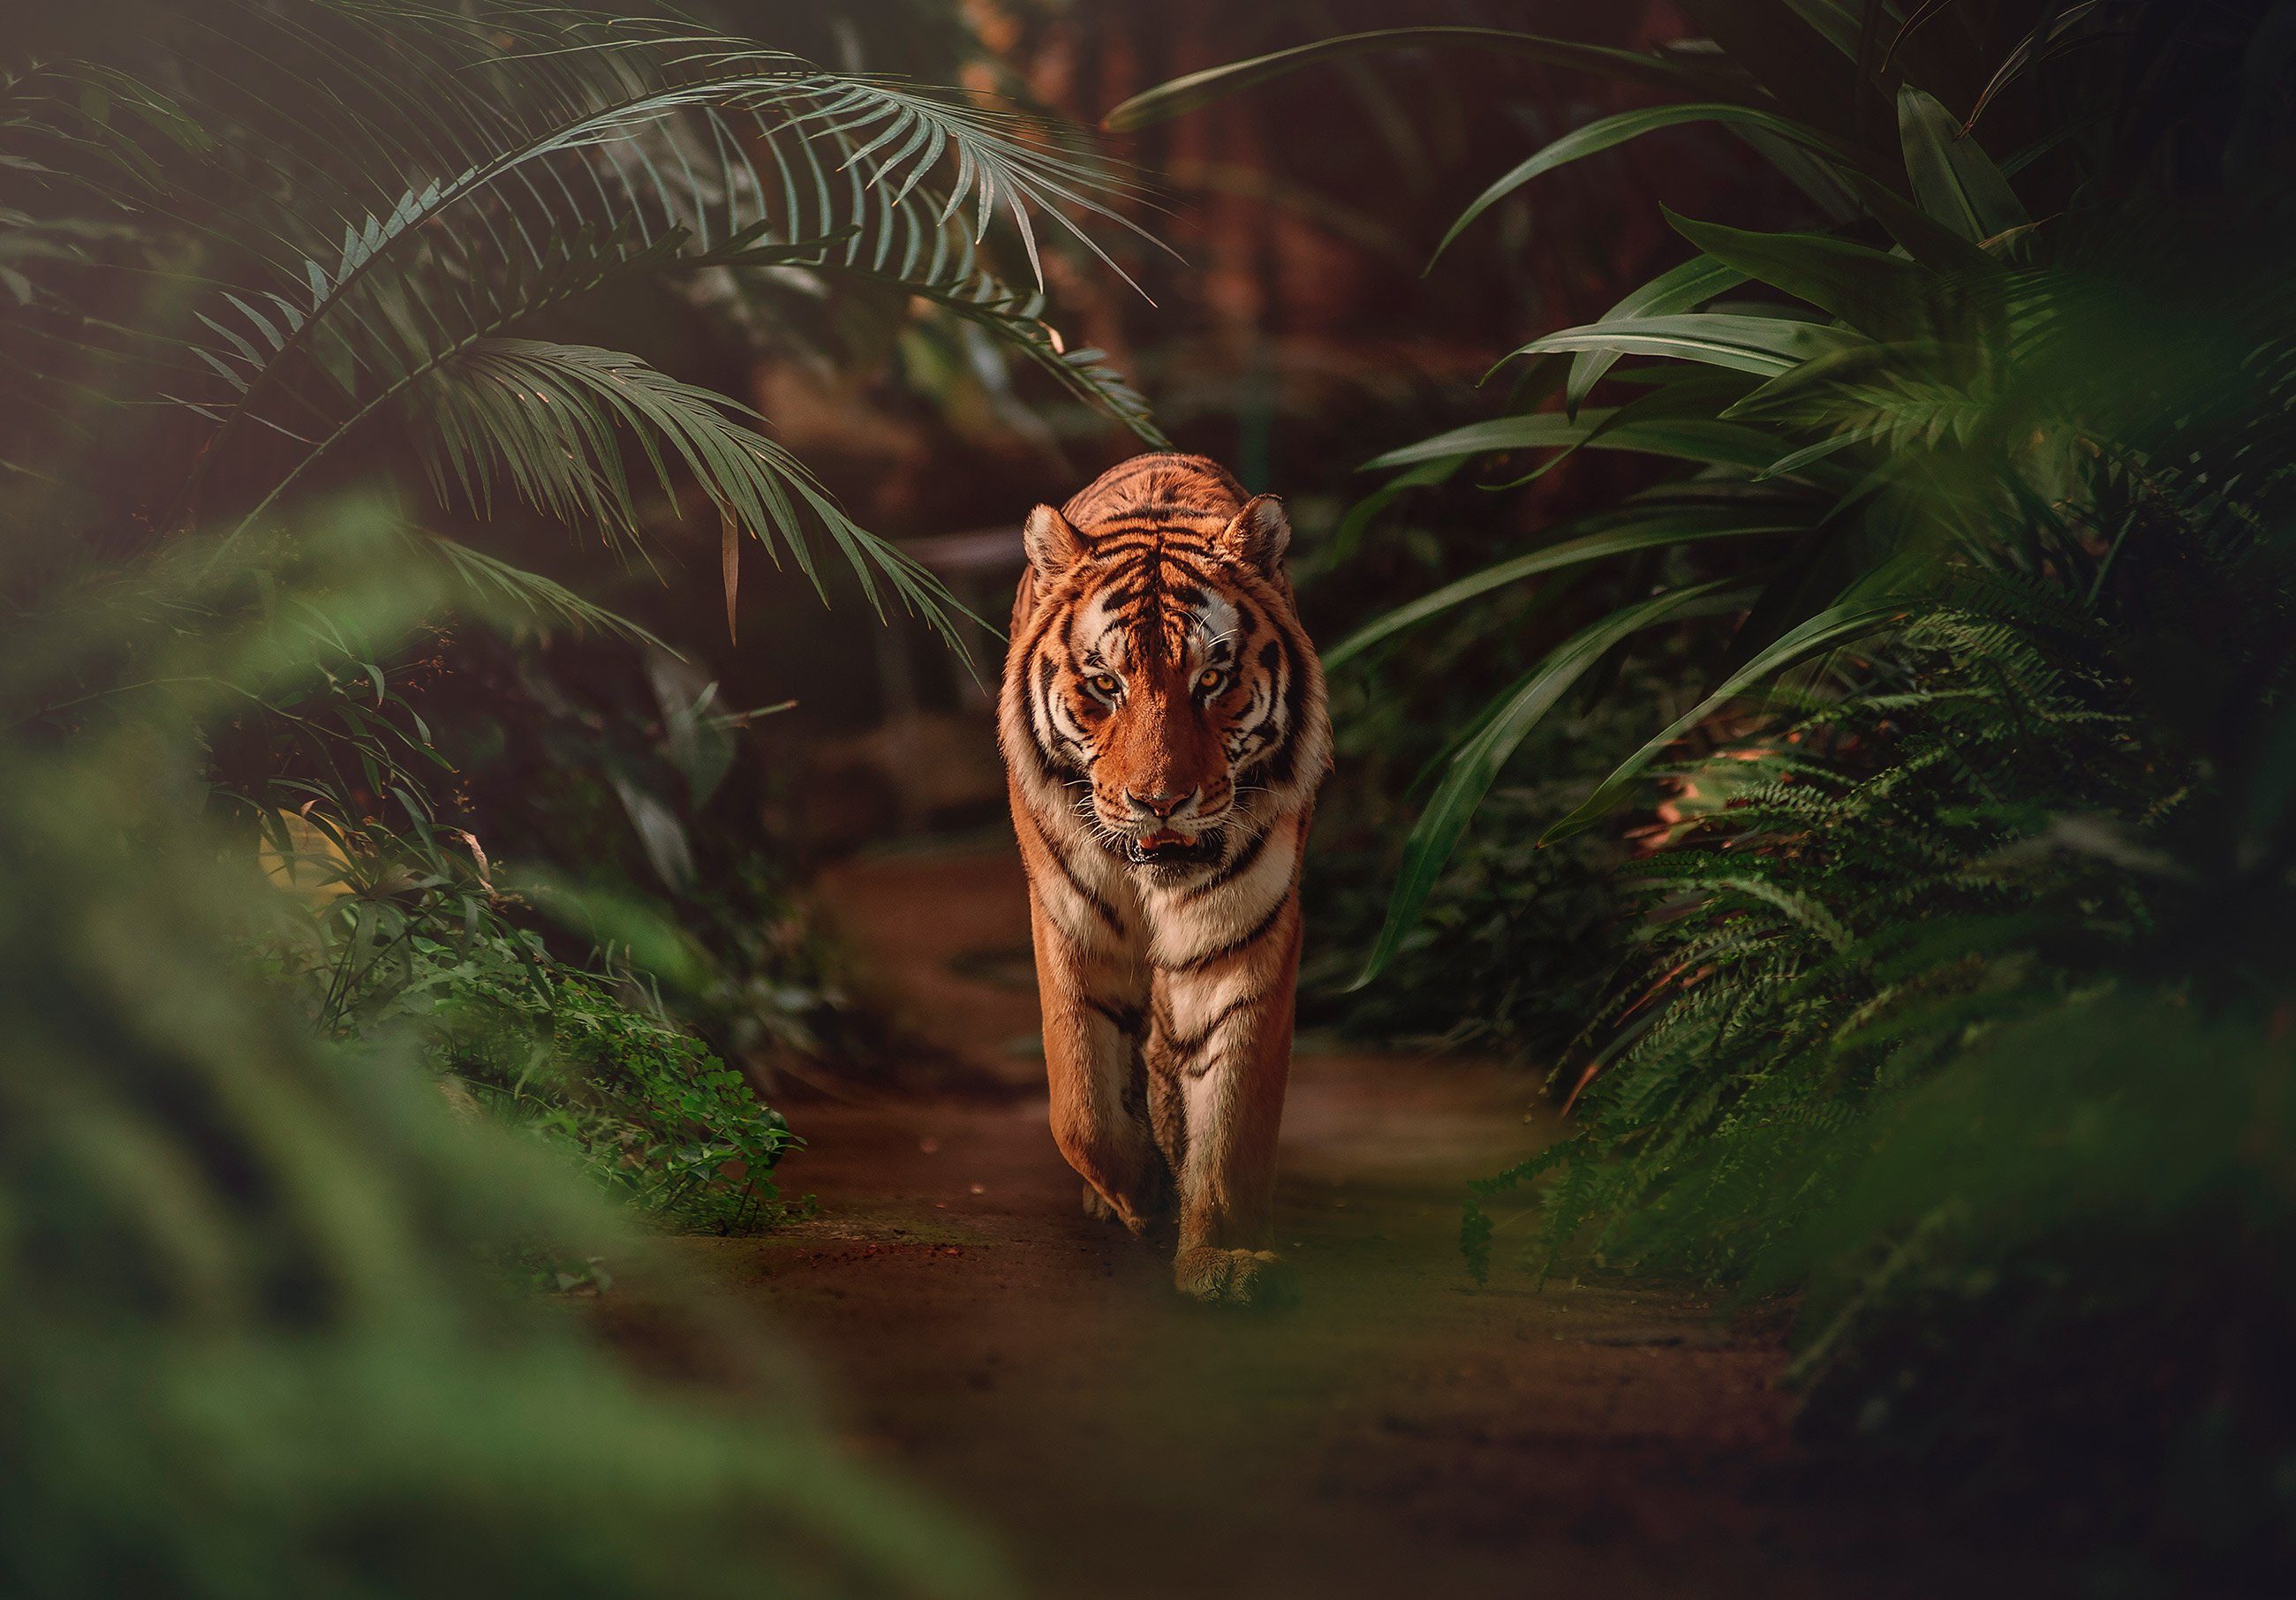 Wallarena Fototapete Tiger Wald Dschungel 3D EFFEKT Vlies Tapete Wohnzimmer Schlafzimmer, Glatt, Tiere, Natur, Blätter, Vliestapete inklusive Kleister